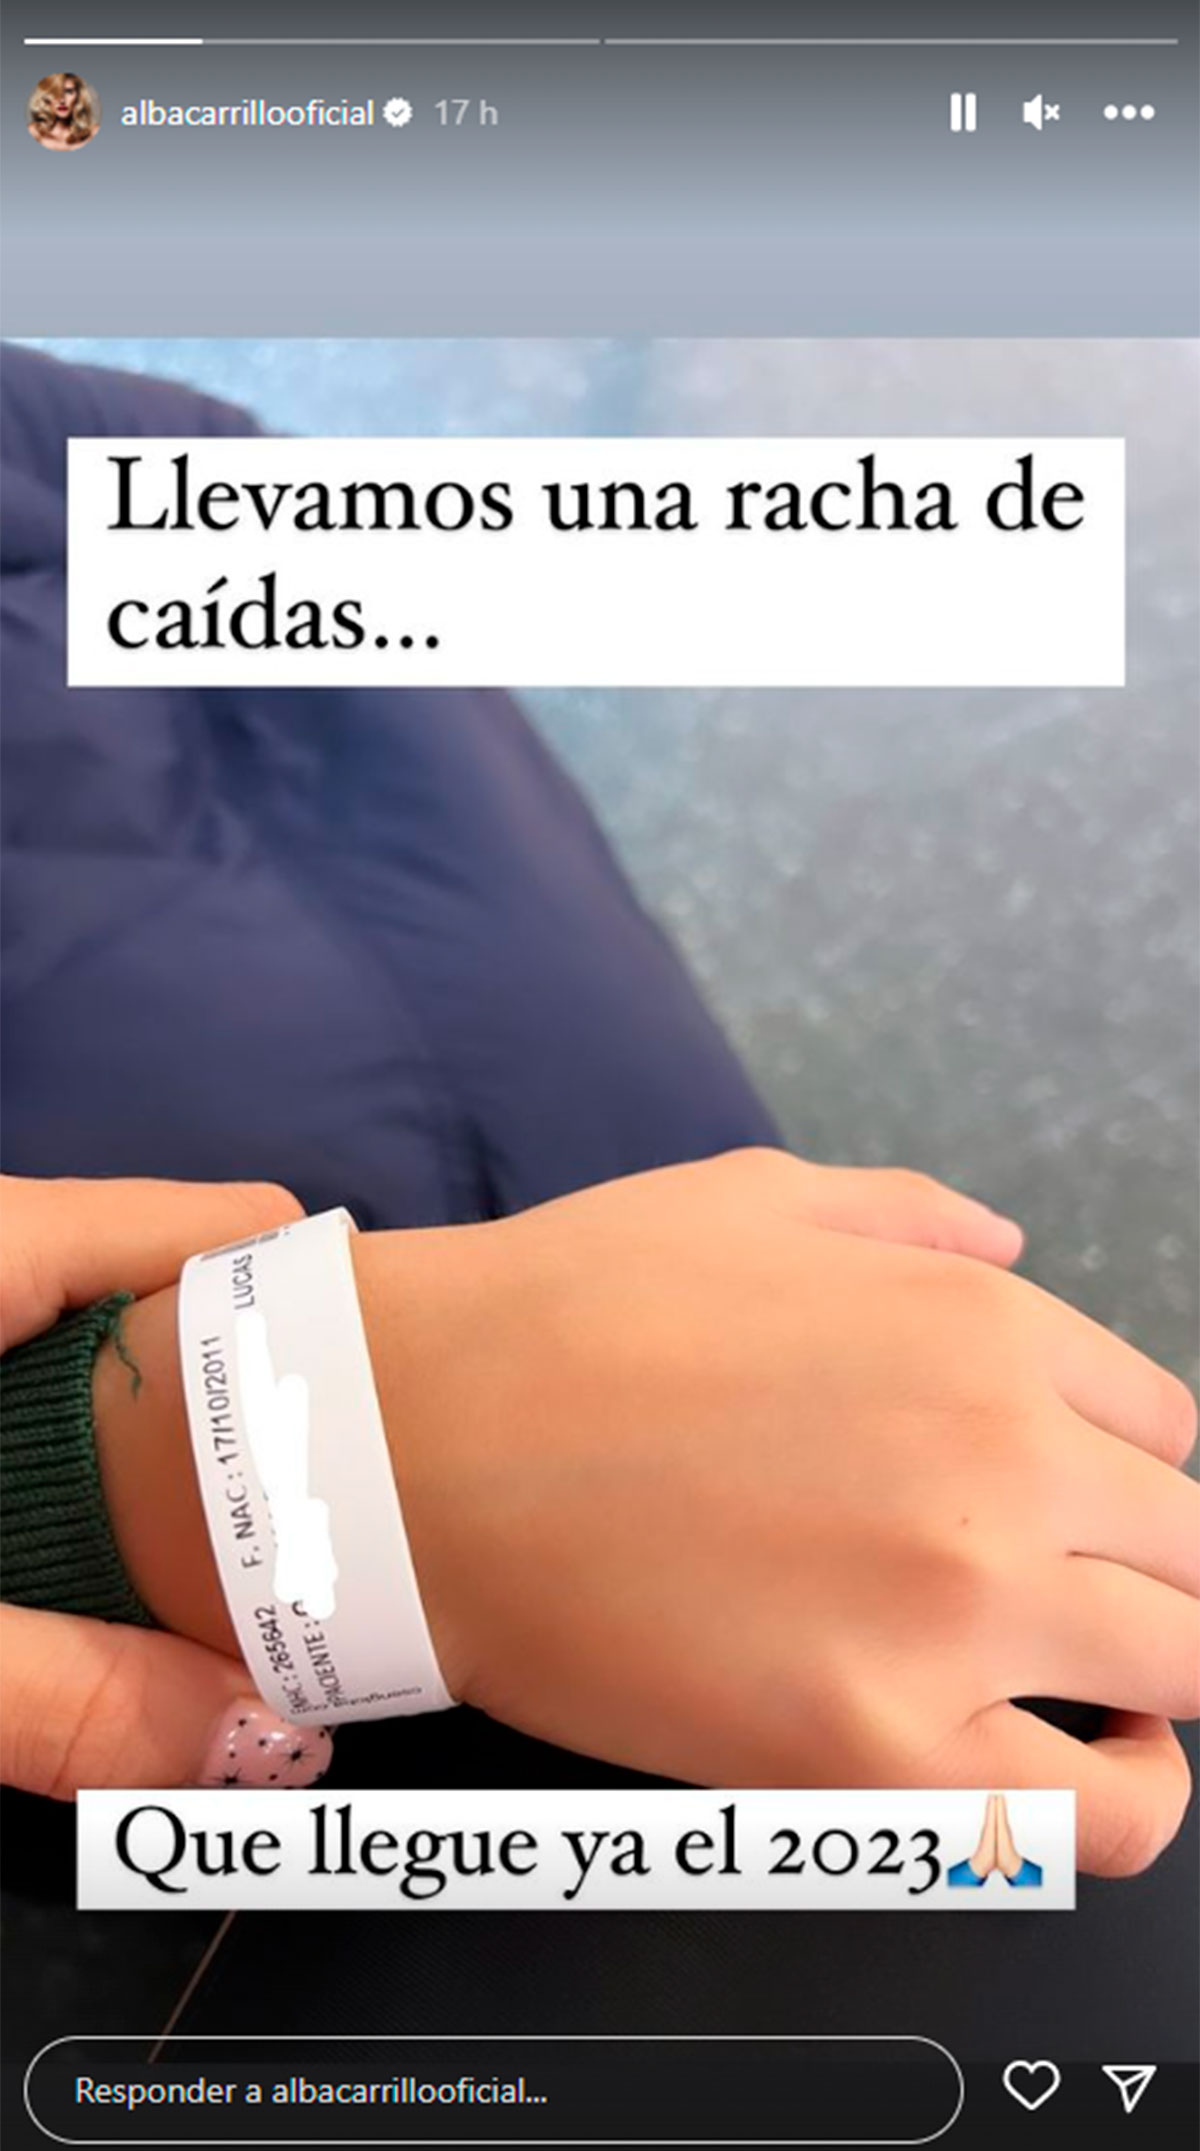 Alba Carrillo vuelve al hospital: "Llevamos una racha"